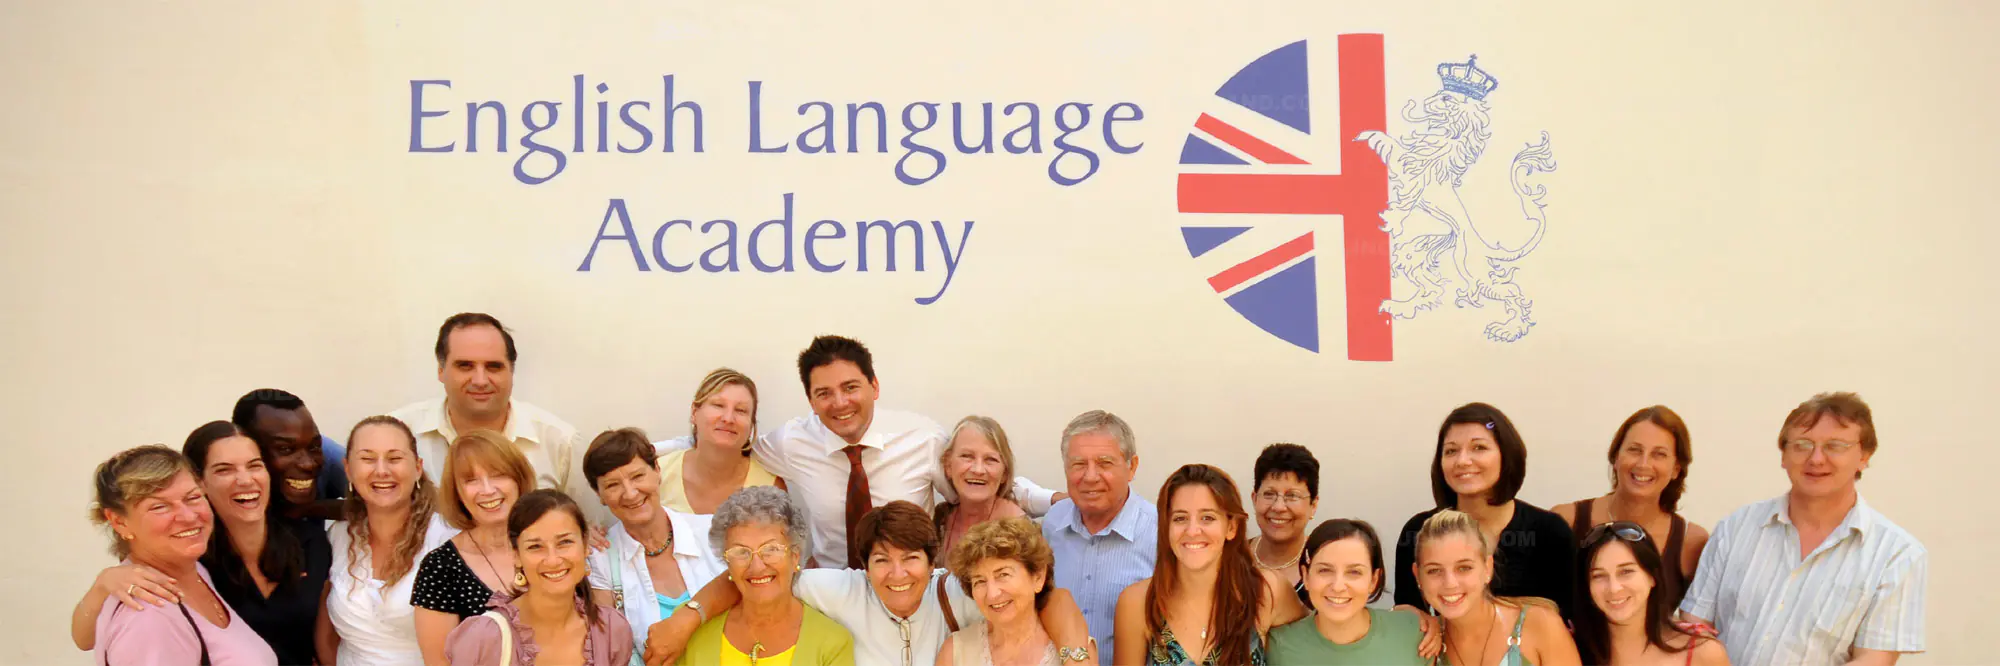 Als Bildungsurlaub anerkannte Sprachkurse bei English Language Academy